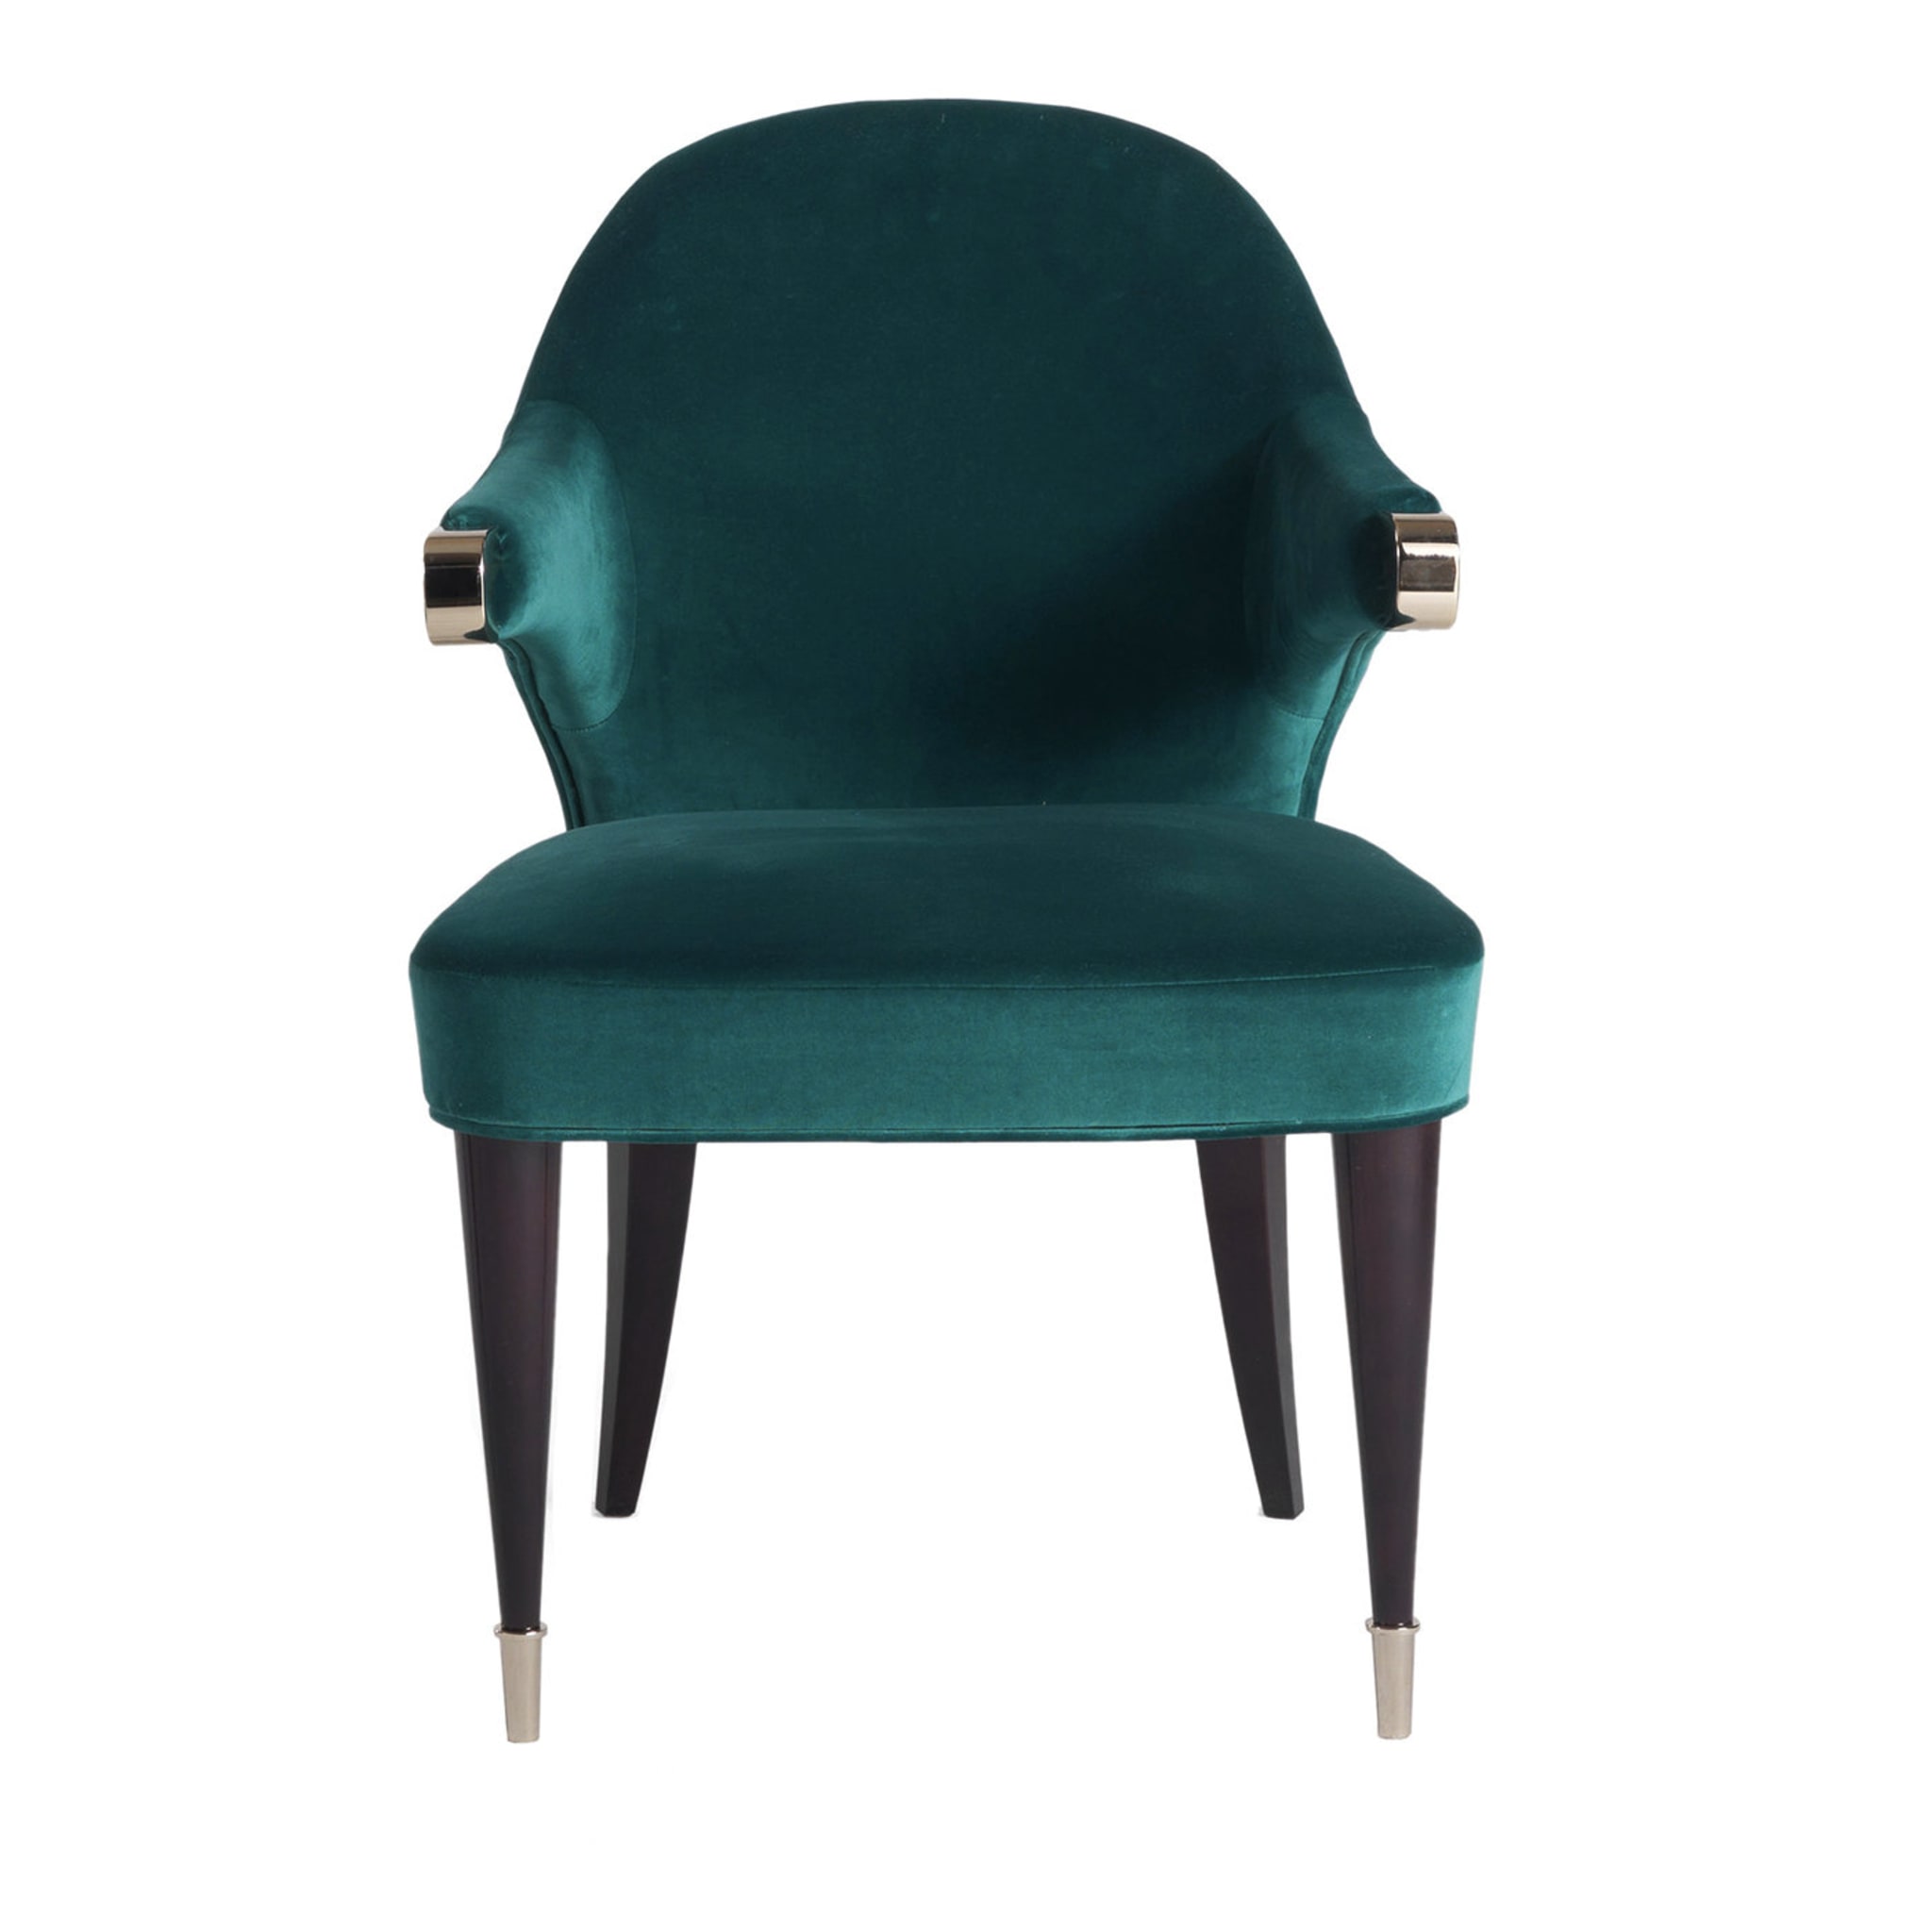 P/5090 Dark Green Chair - Main view